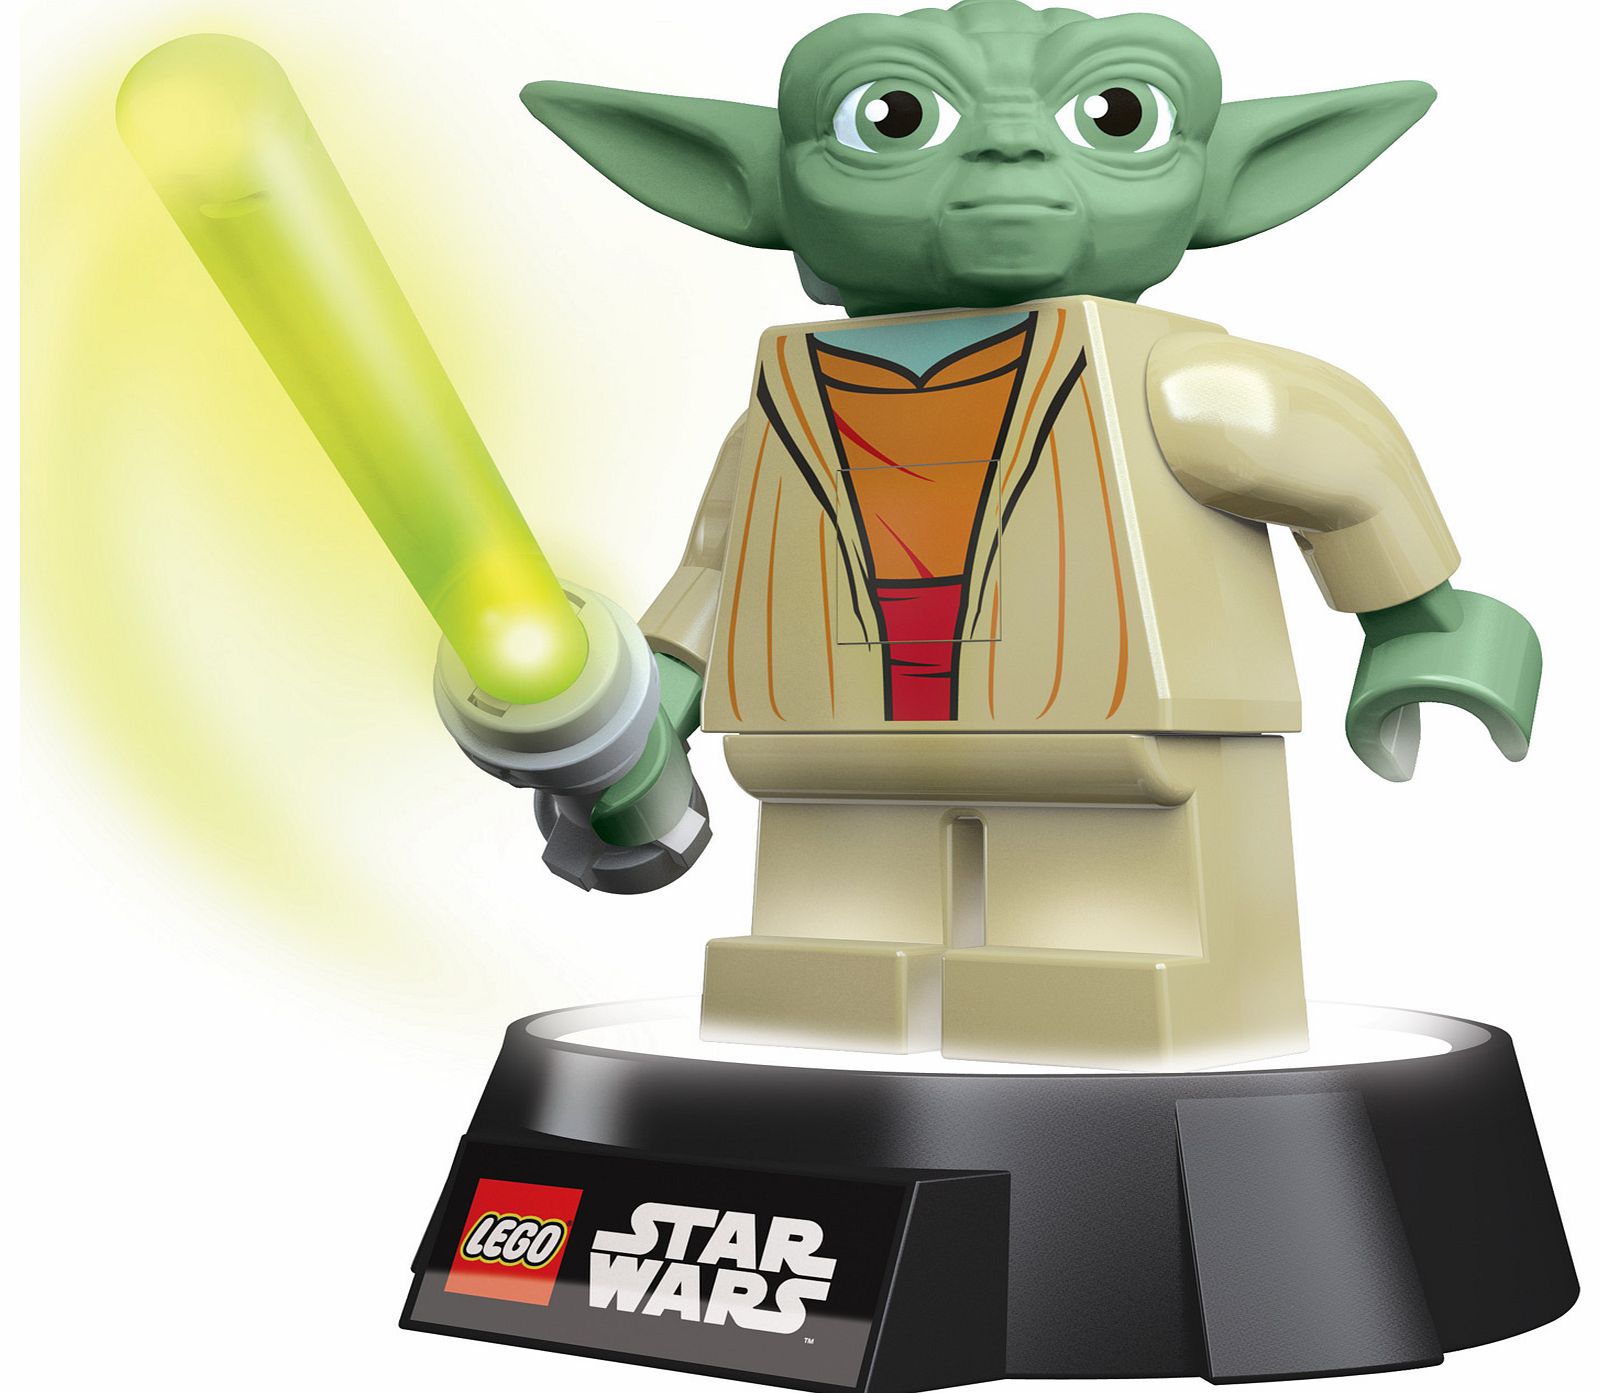 LEGO Star Wars Yoda Torch - Nightlight